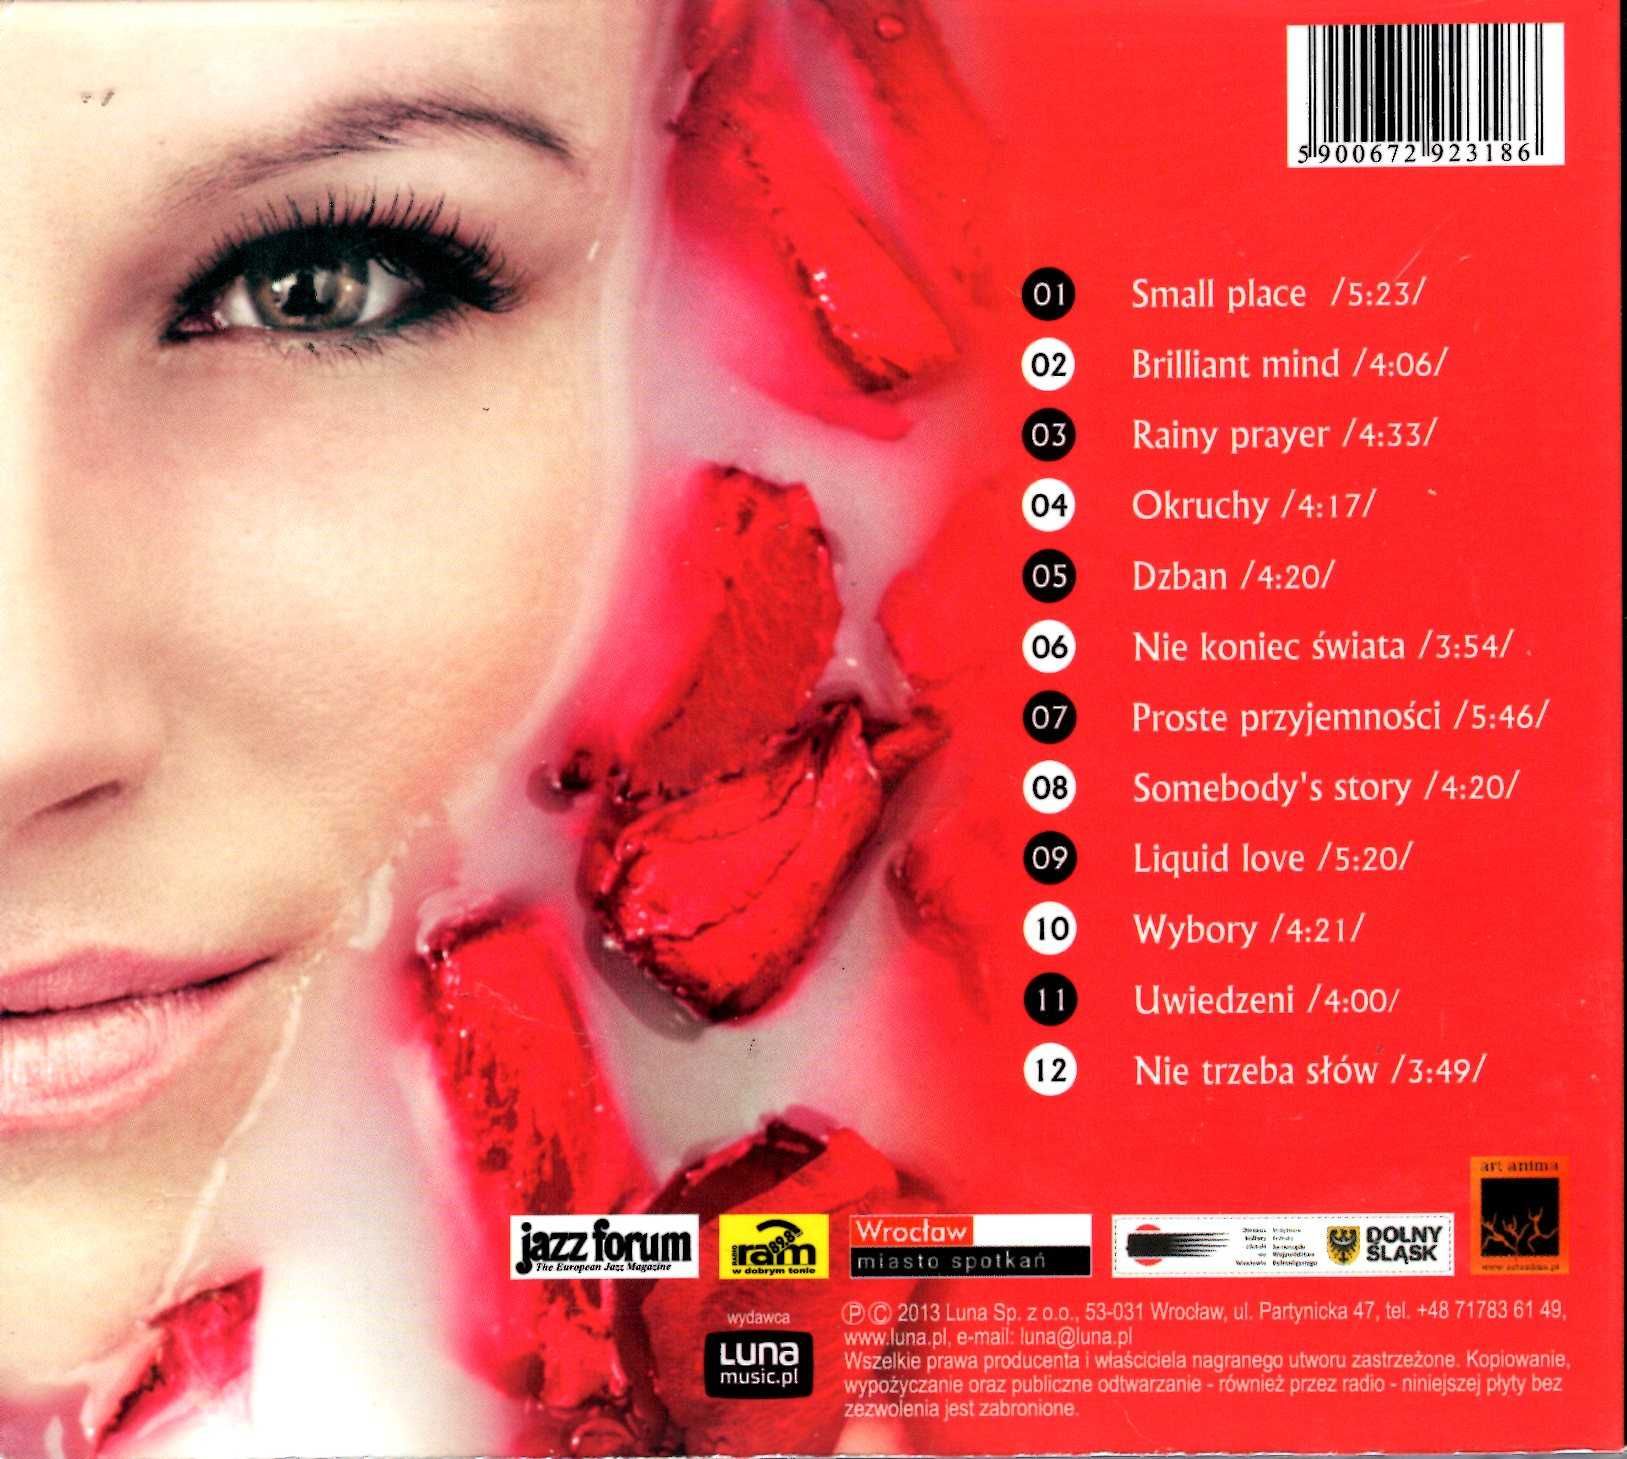 Kasia Mirowska - Liquid Love (CD)